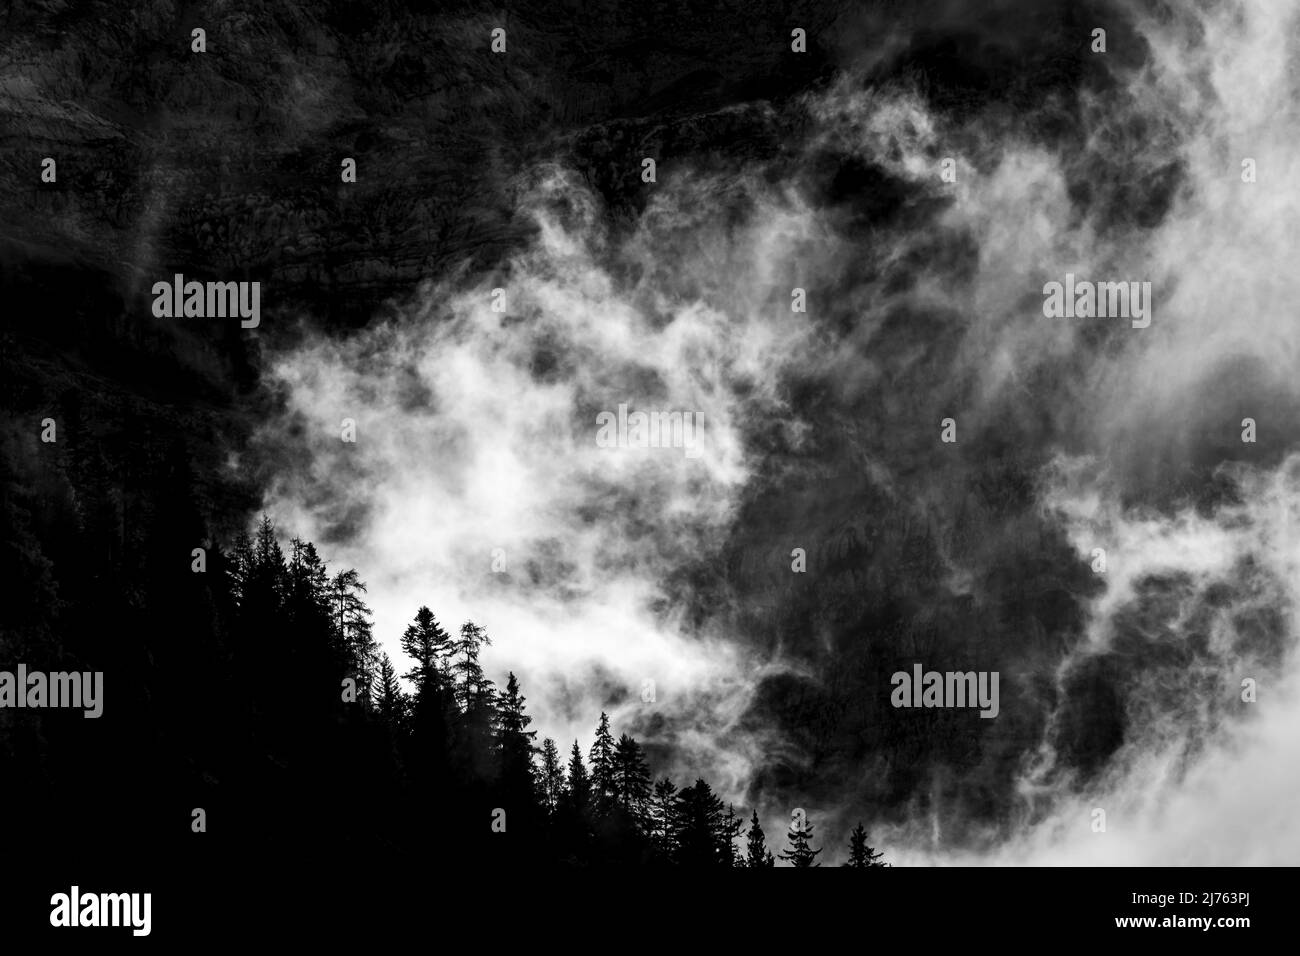 Dunkle Hintergrundstimmung am Bergwald, im Hintergrund die schroffen Felswände der Lalidererwande im Karwendel, Tirol/Österreich, bei Hinterriss im sogenannten eng. Stockfoto